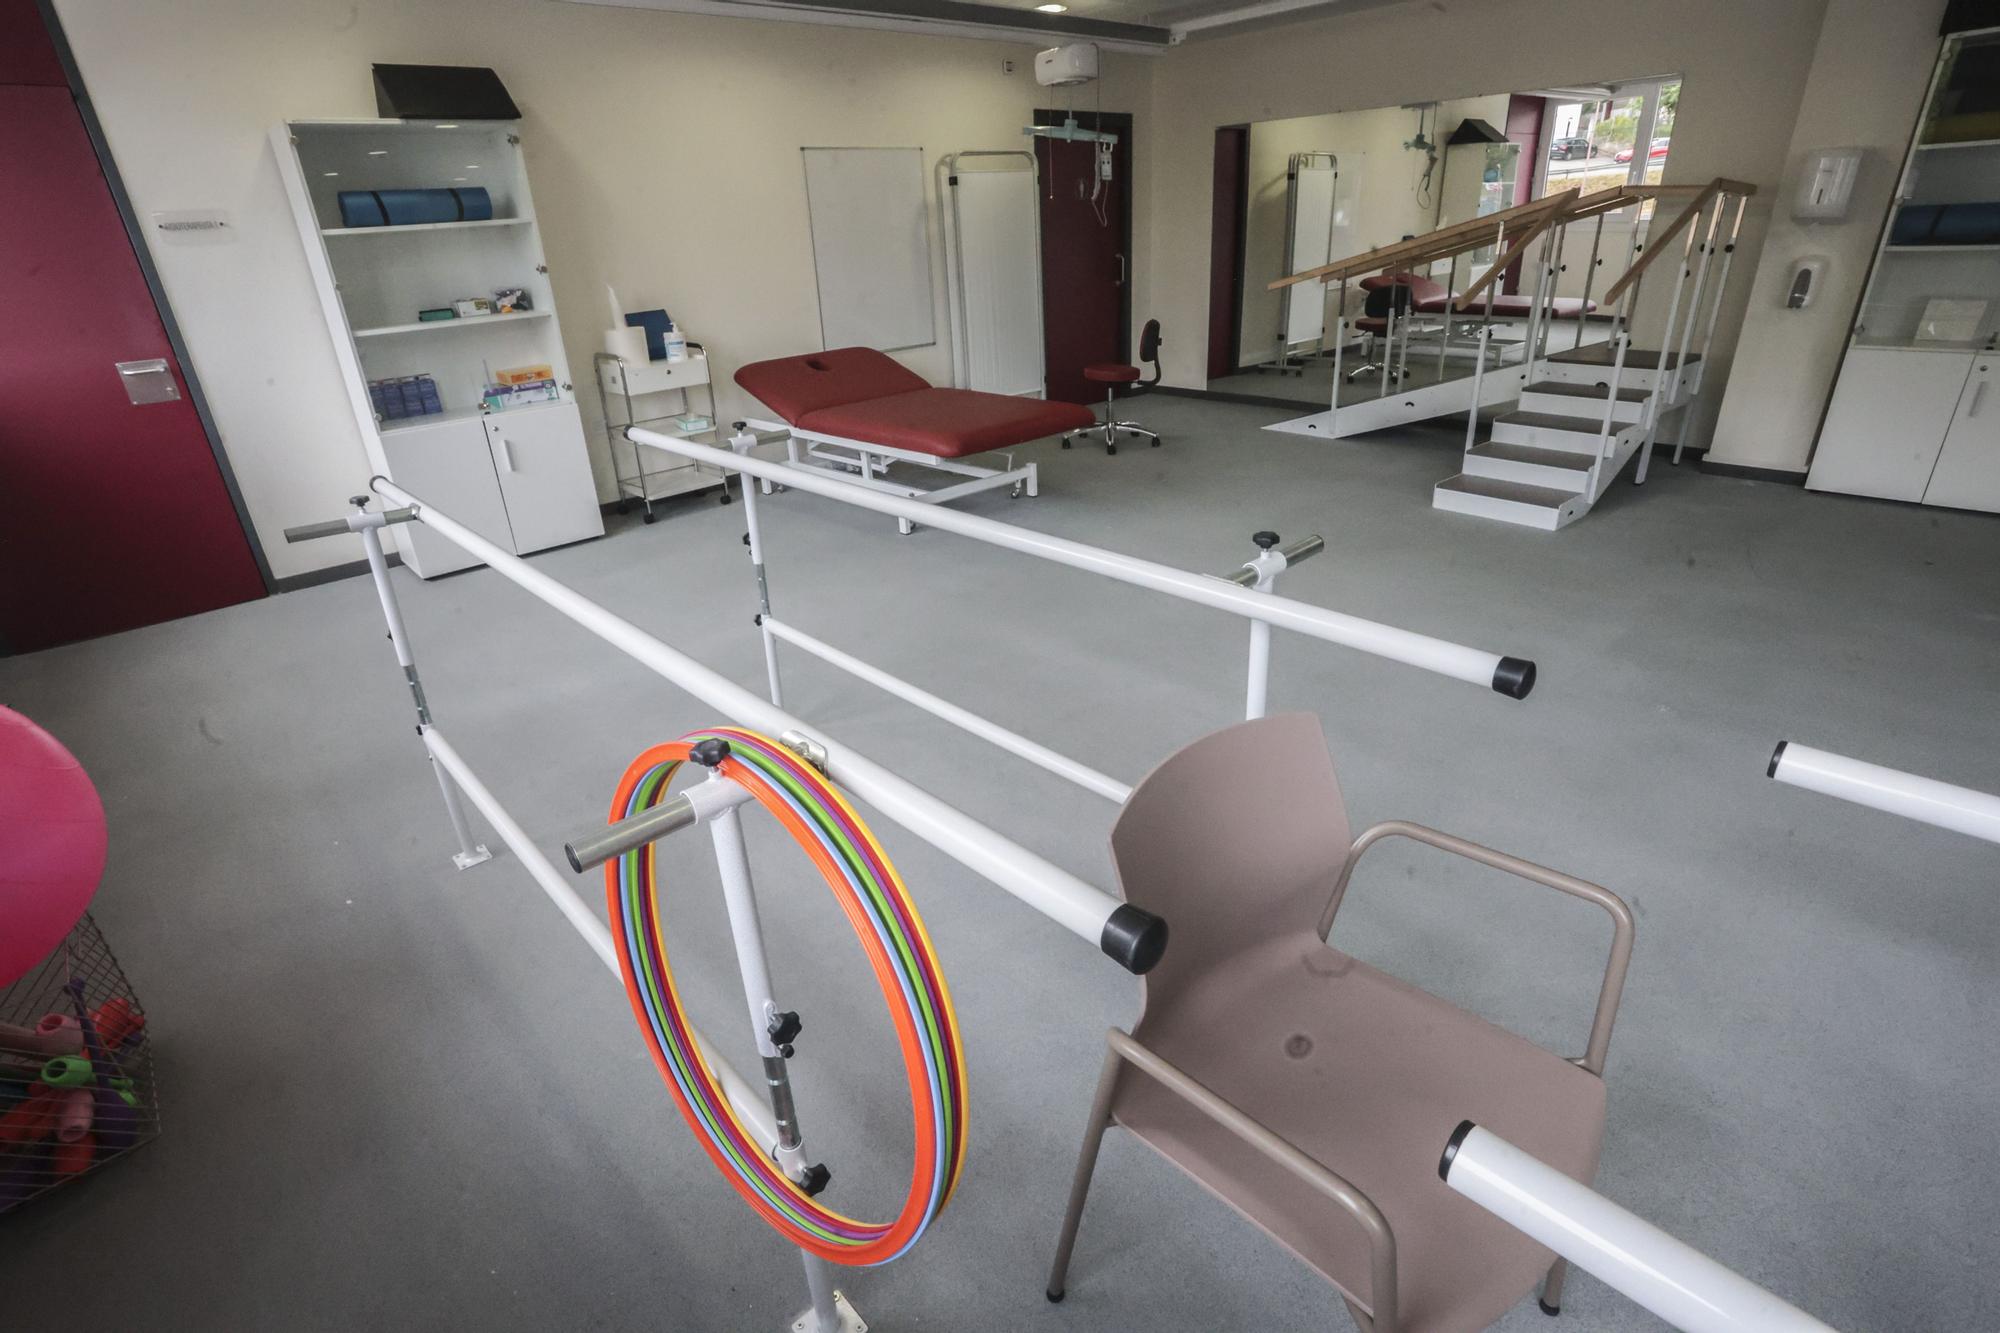 EN IMÁGENES: El centro neurológico de Langreo abre tras diez años